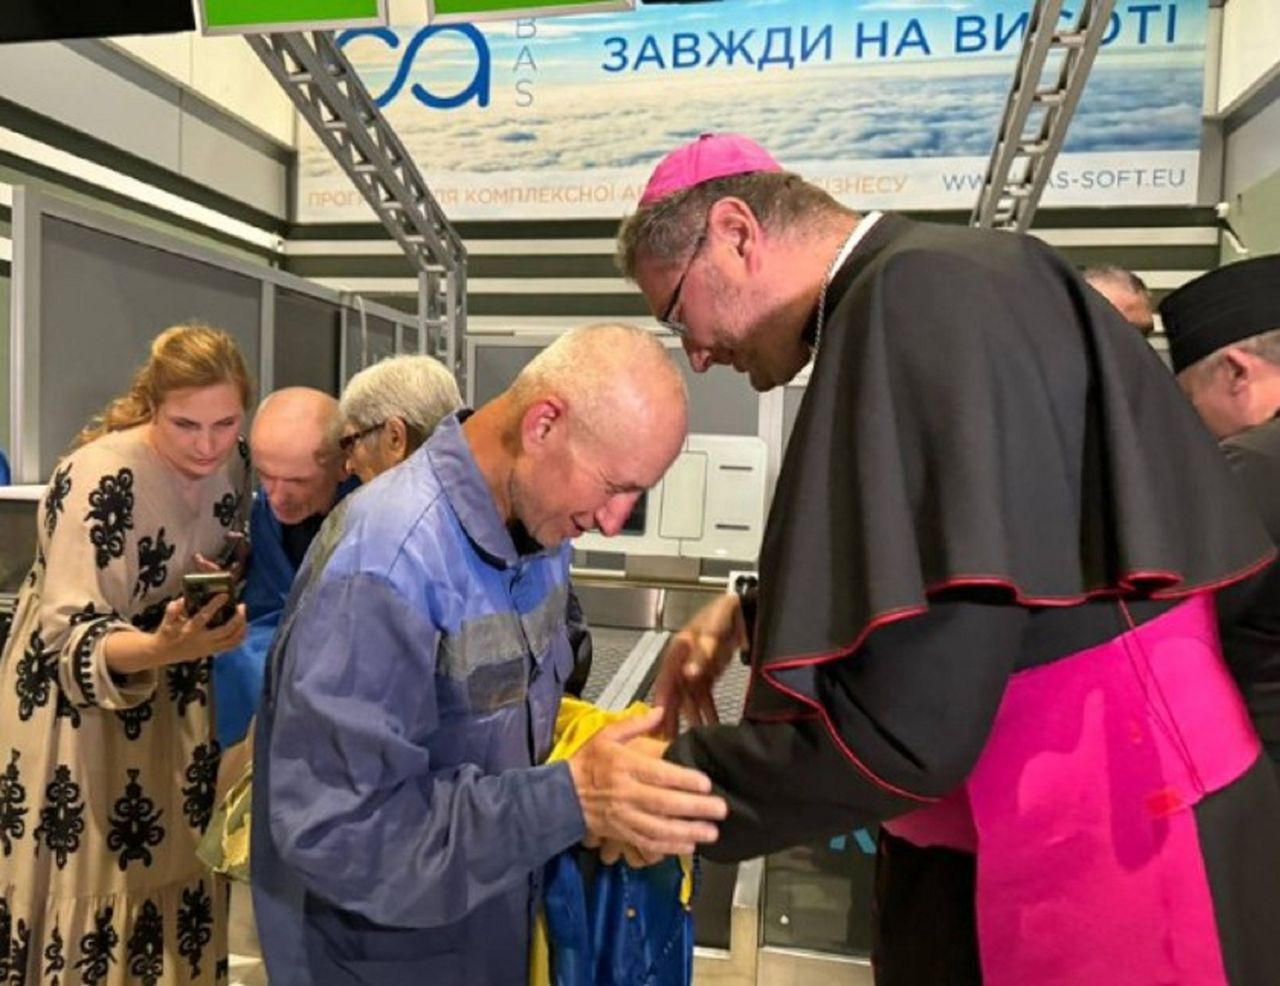 Ukrainian prisoners freed in Russian exchange brokered by Vatican